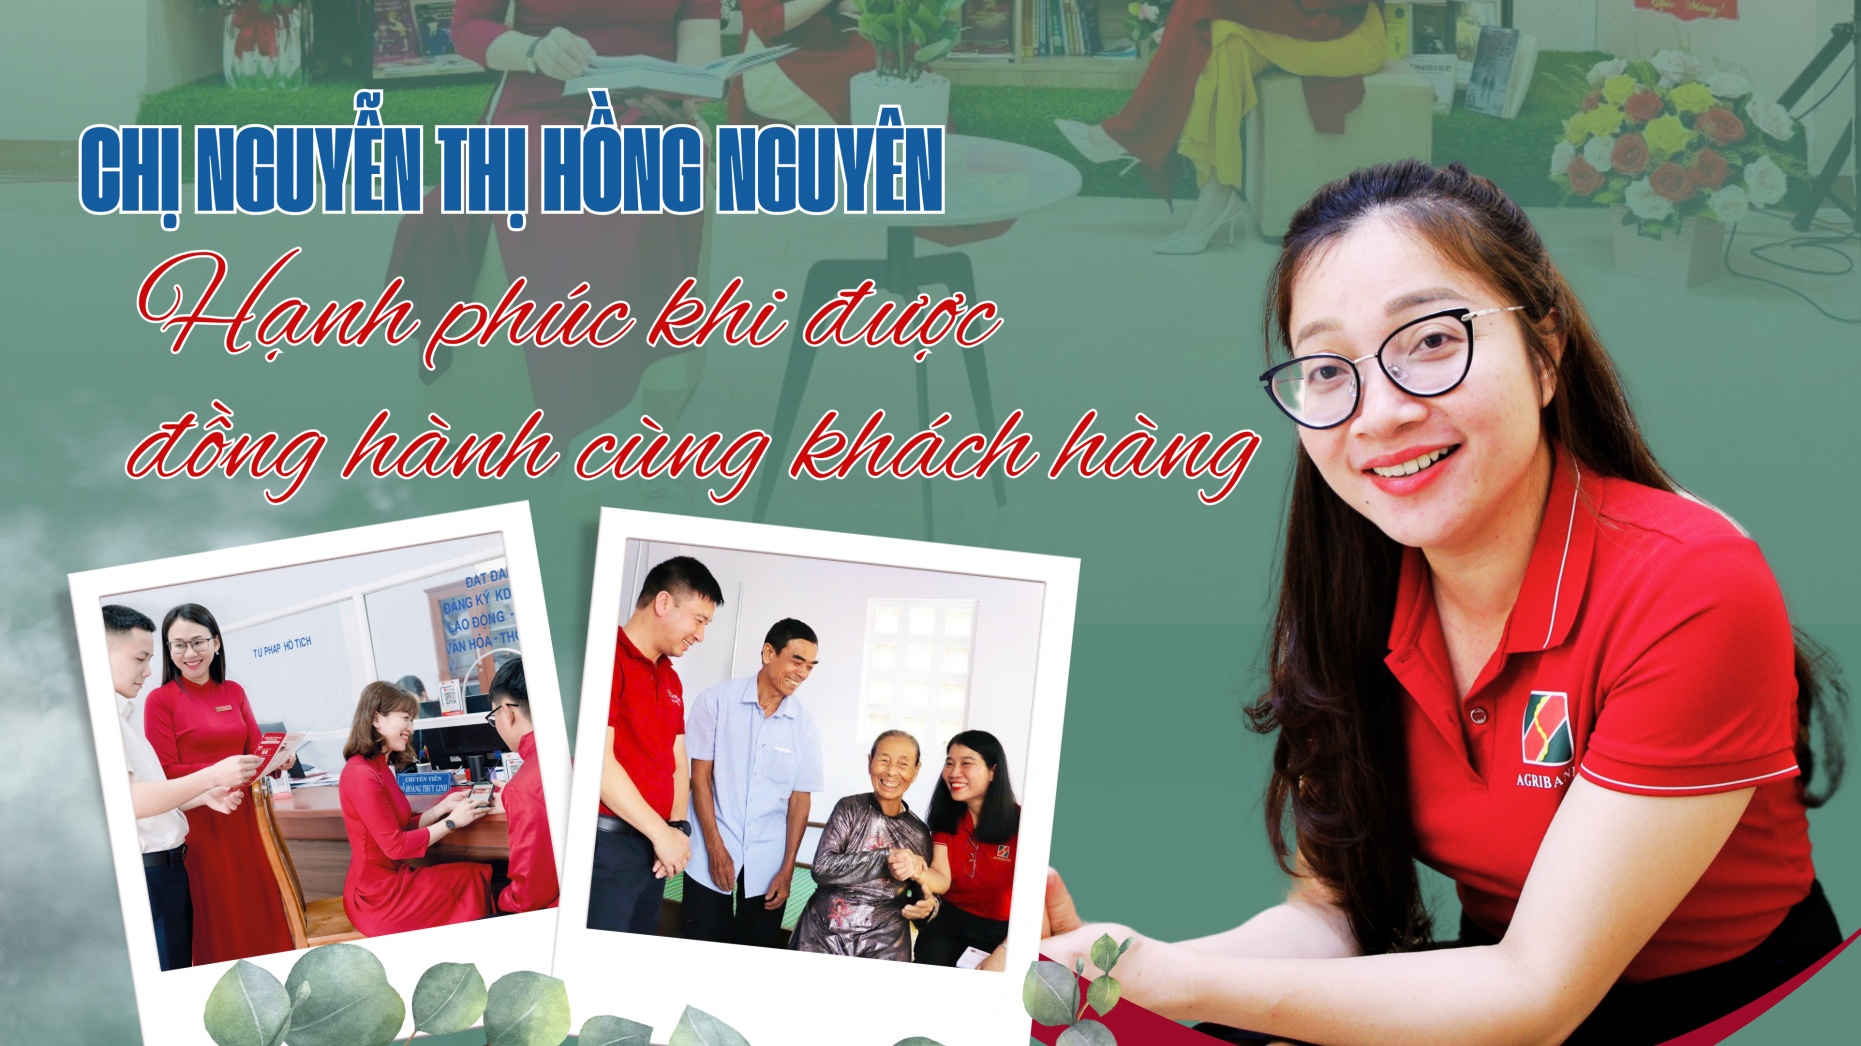 Chị Nguyễn Thị Hồng Nguyên - Hạnh phúc khi được đồng hành cùng khách hàng